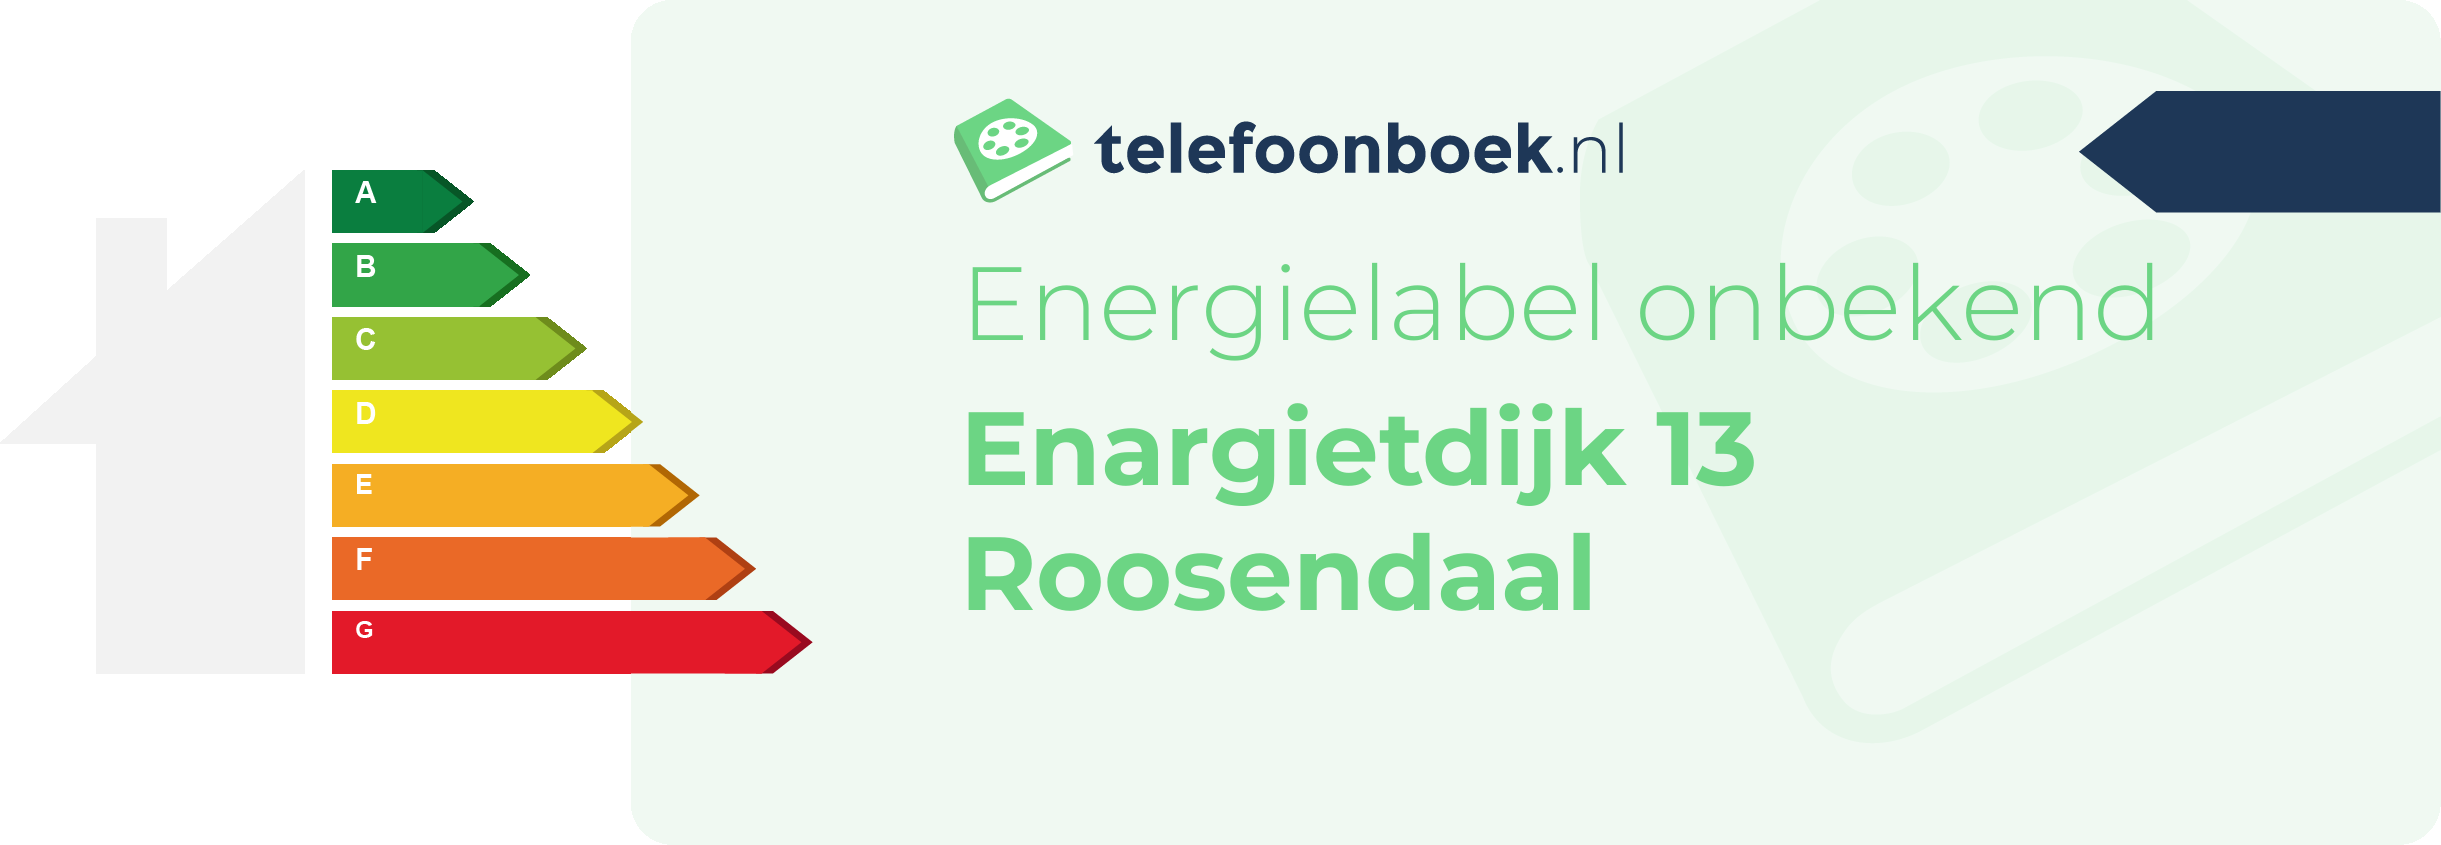 Energielabel Enargietdijk 13 Roosendaal